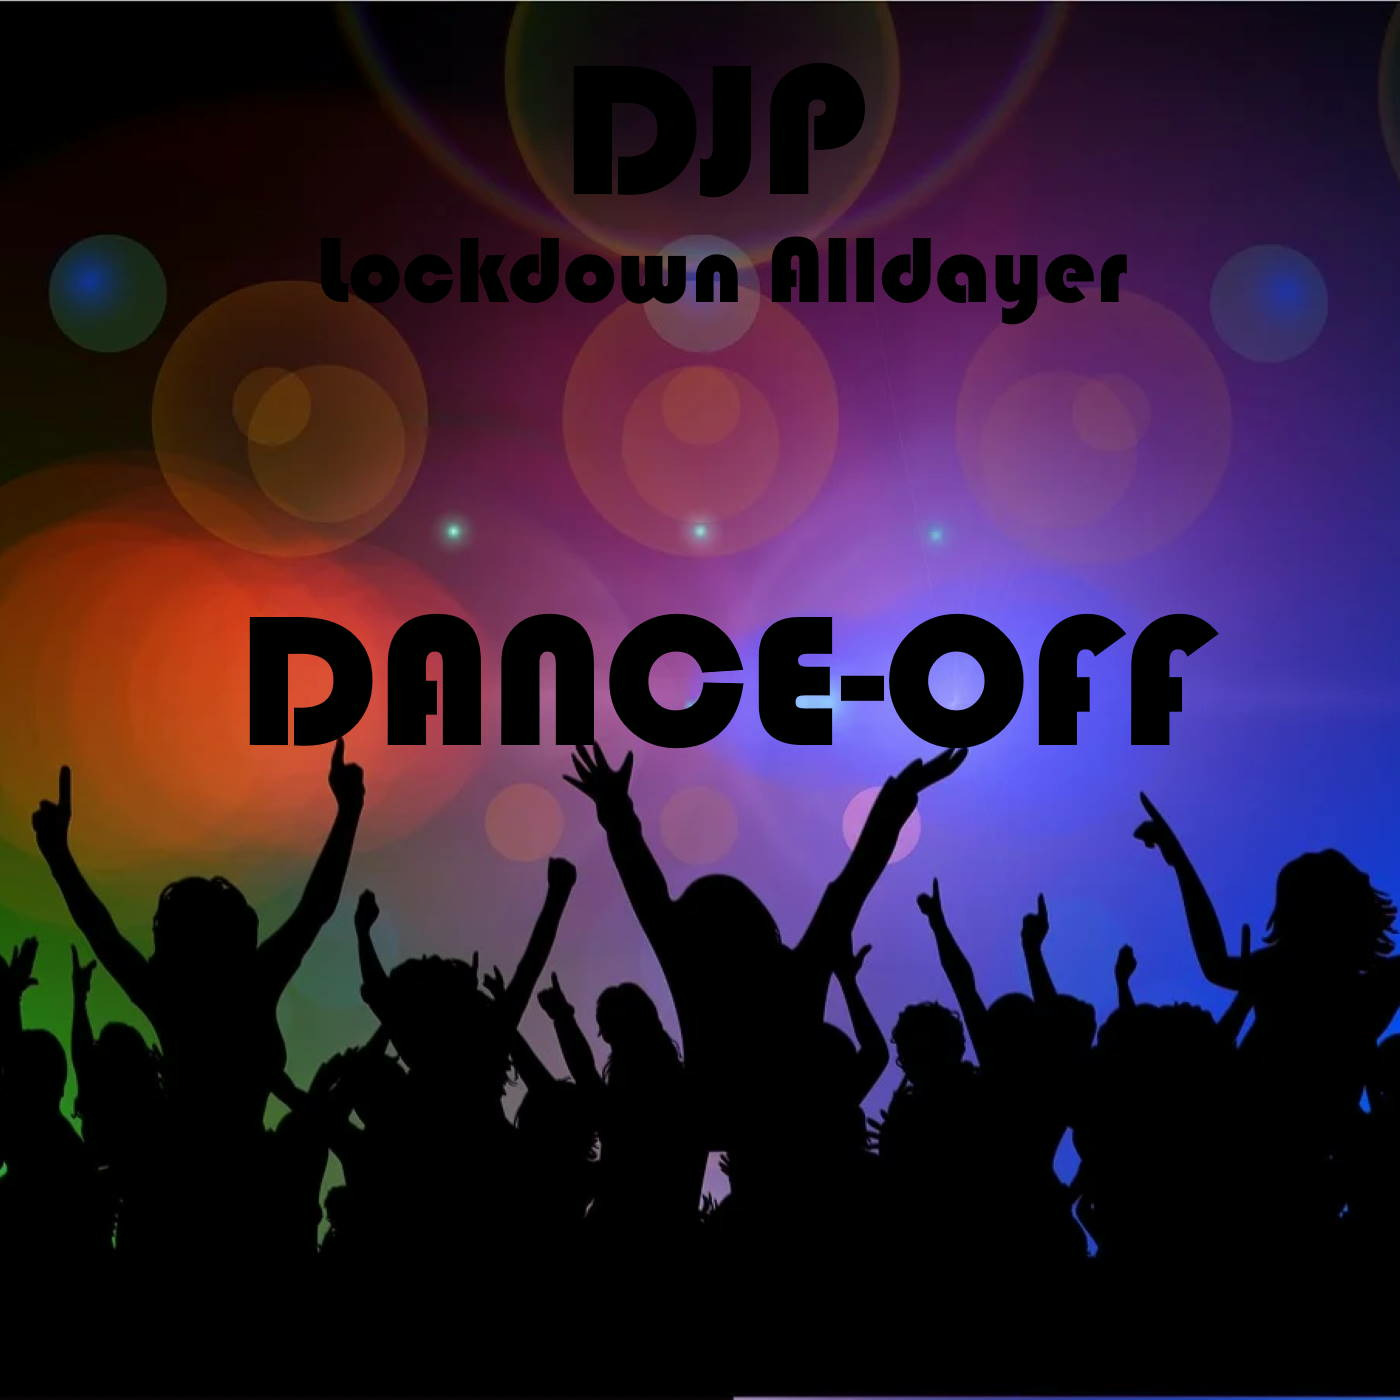 DJP - Dance-off Lockdown Alldayer mix